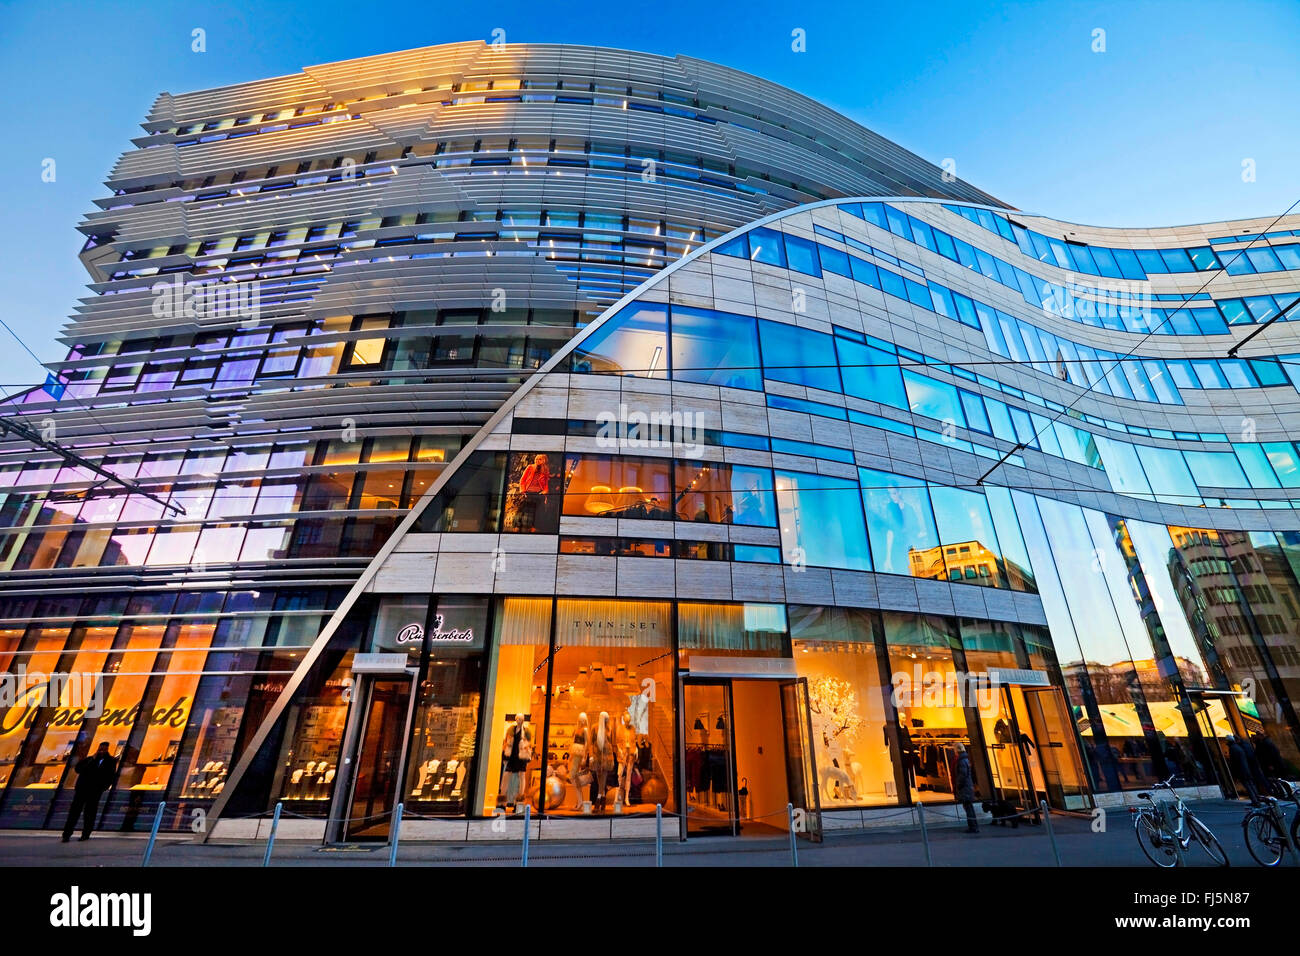 La Koe-Bogen, oficinas y edificios comerciales, en Alemania, en Renania del Norte-Westfalia, Duesseldorf Foto de stock